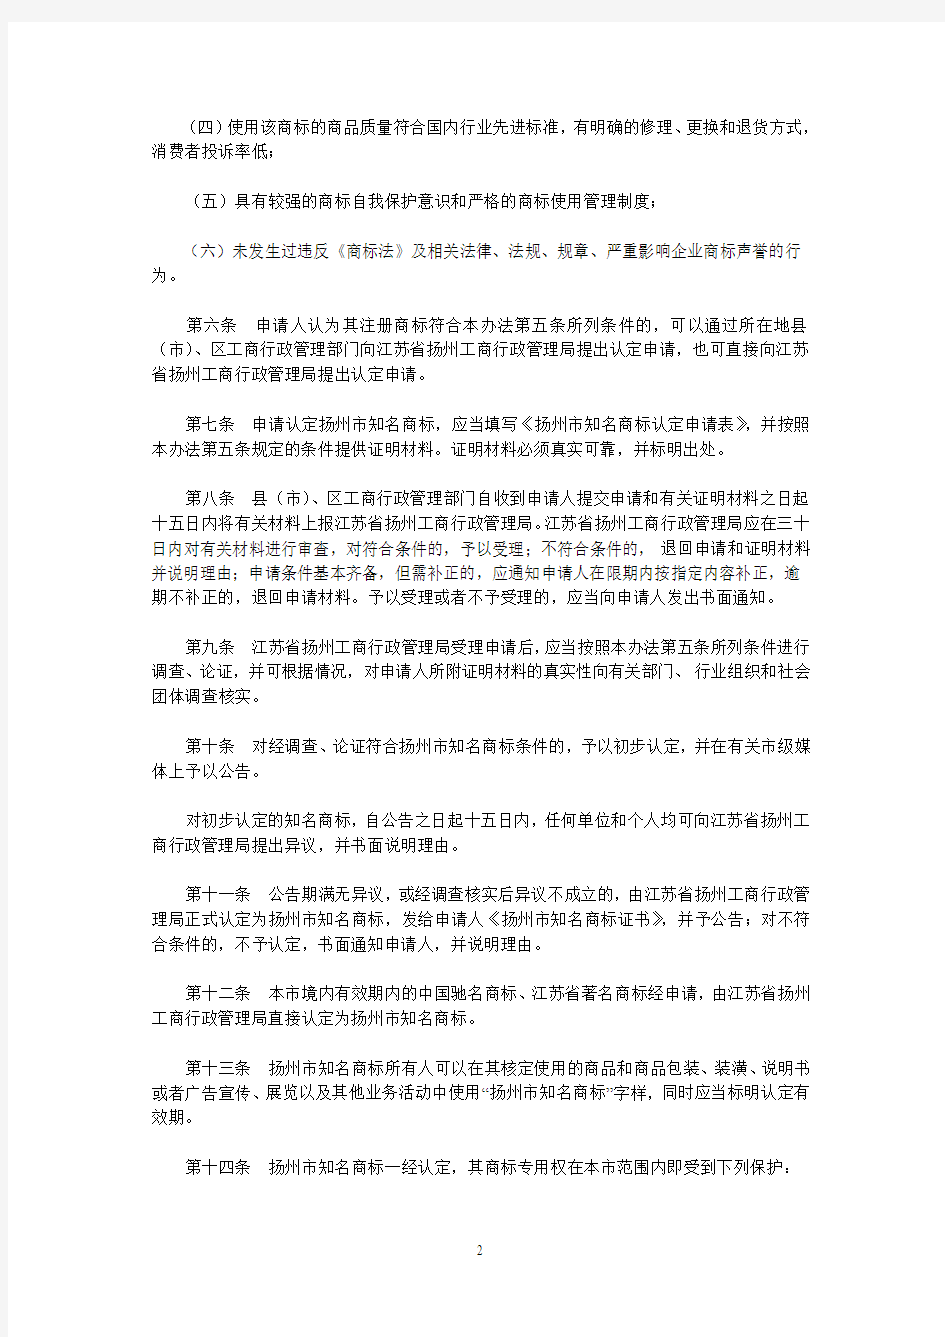 扬州市知名商标认定和保护办法